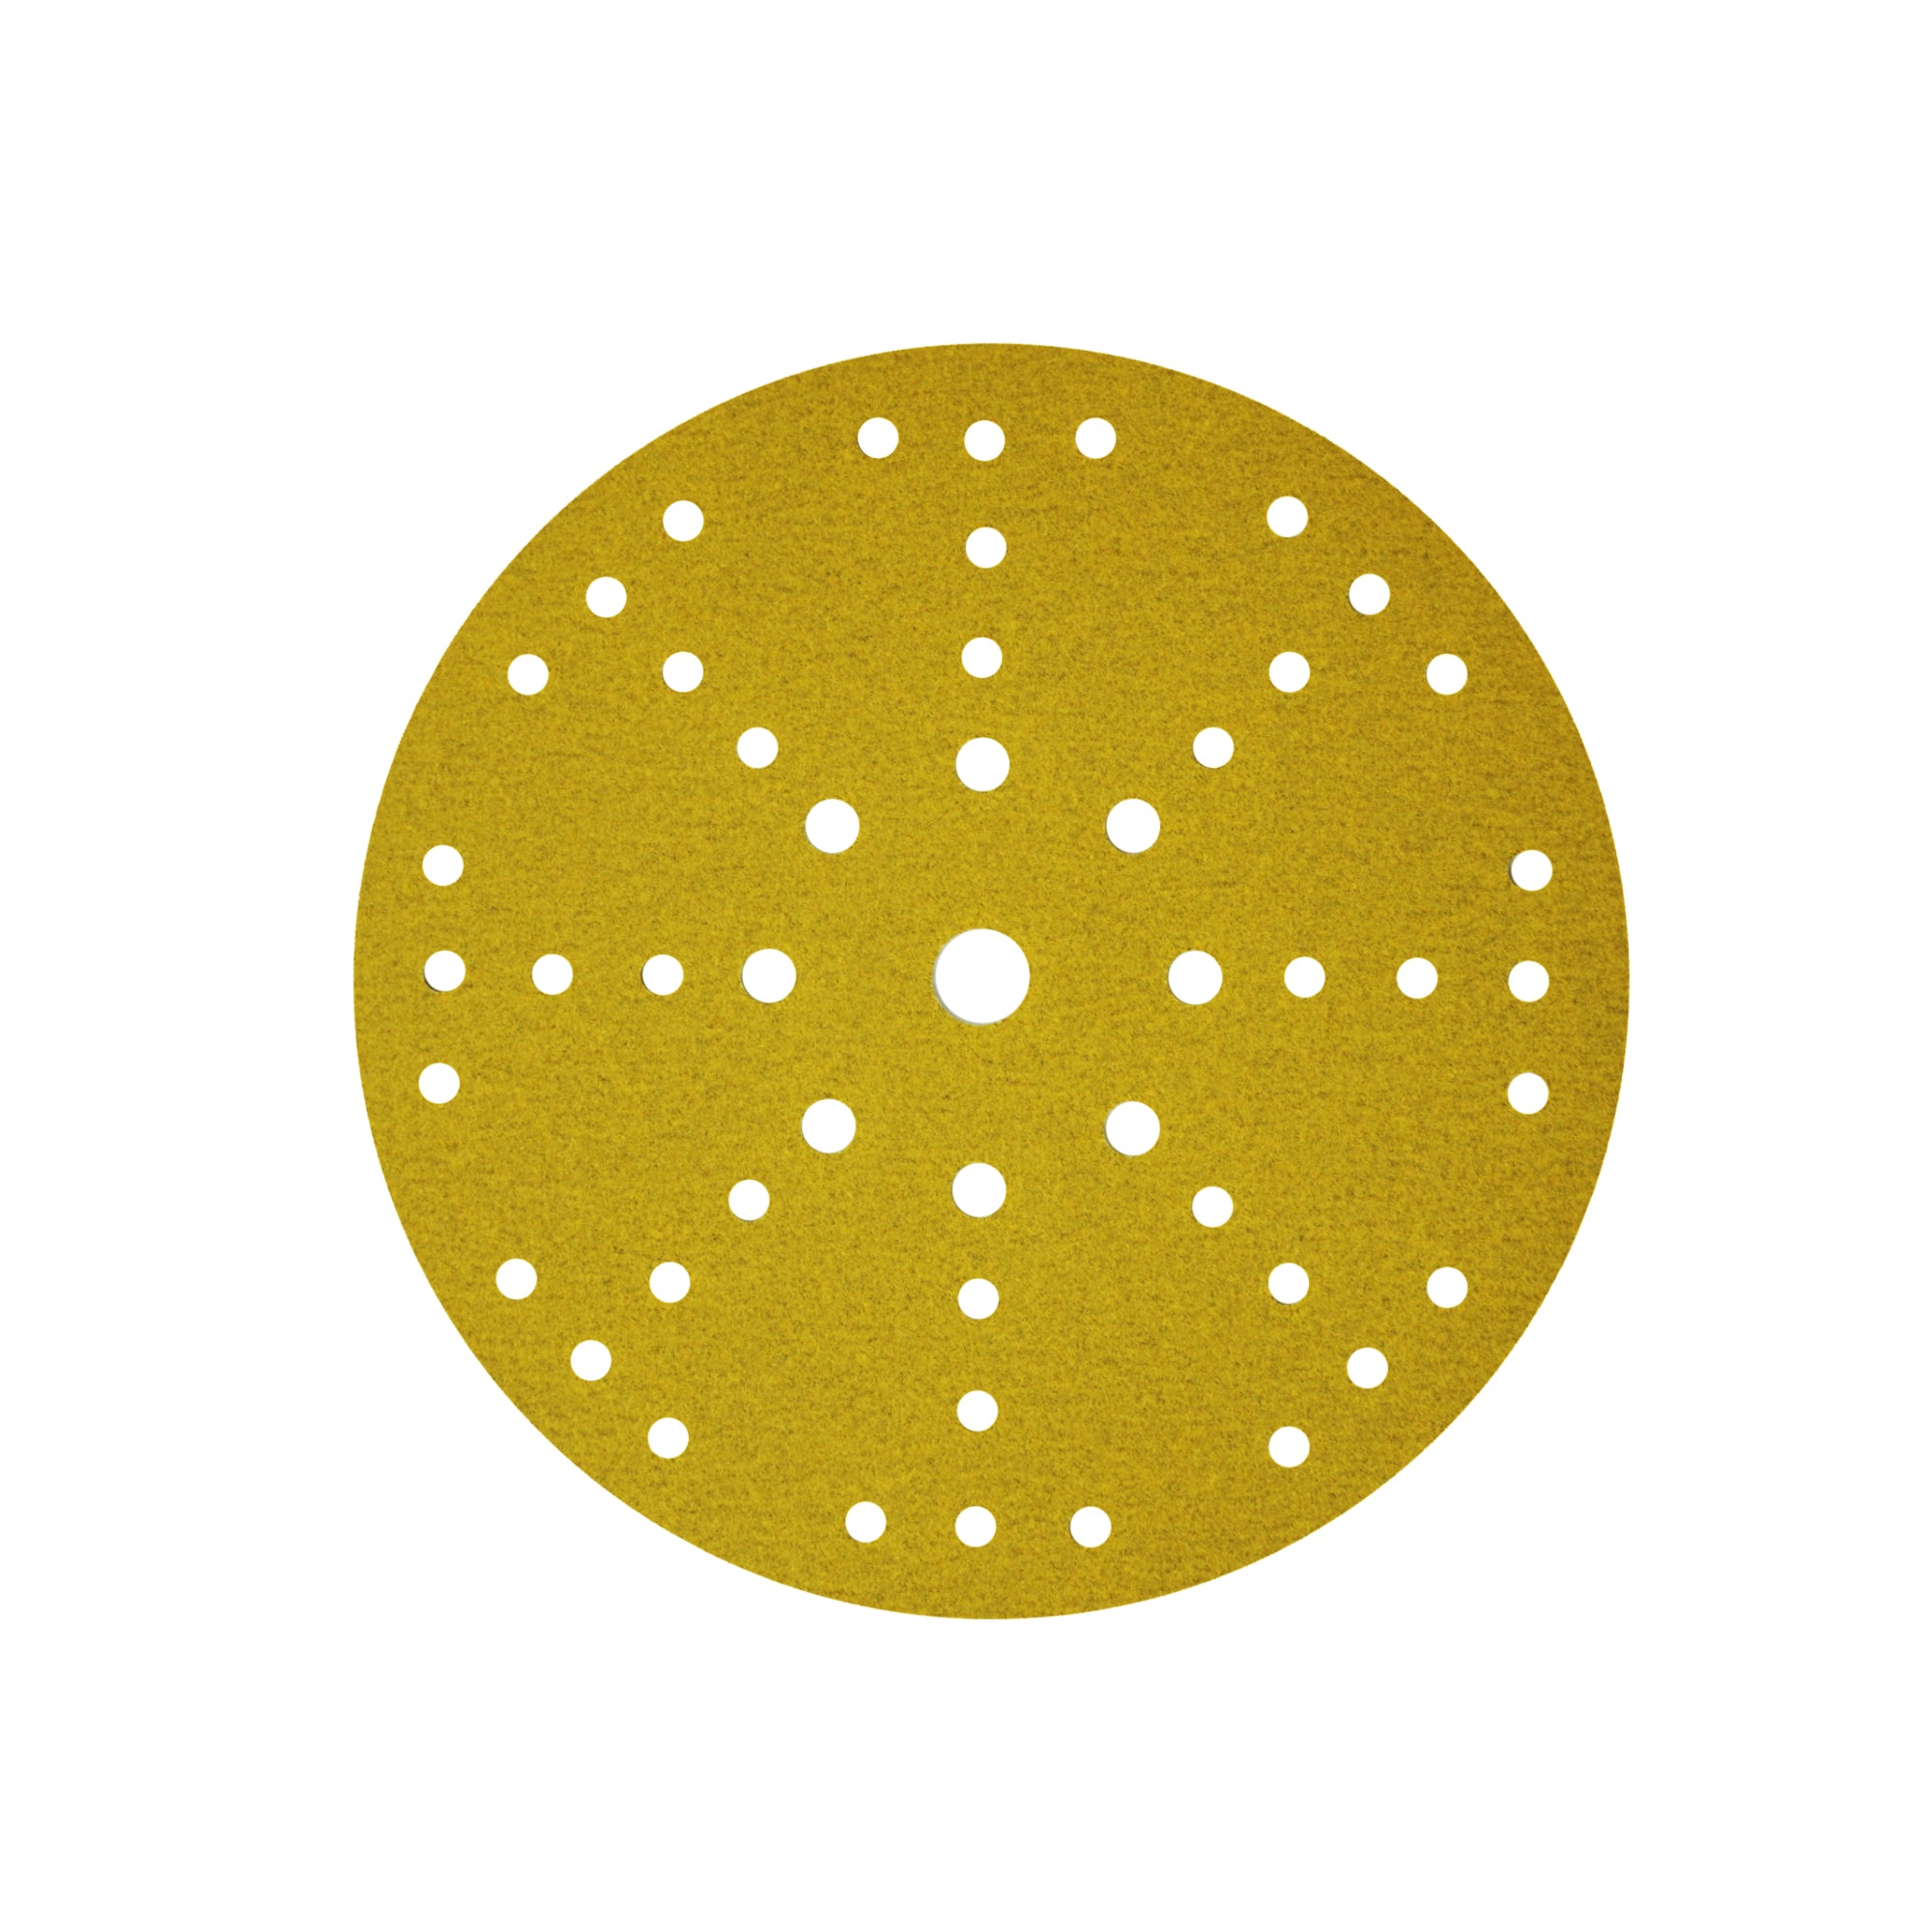 CSR Disques abrasifs pour cloisons sèches Prosand Gold de qualité supérieure de 22,9 cm pour Festool (lot de 5)